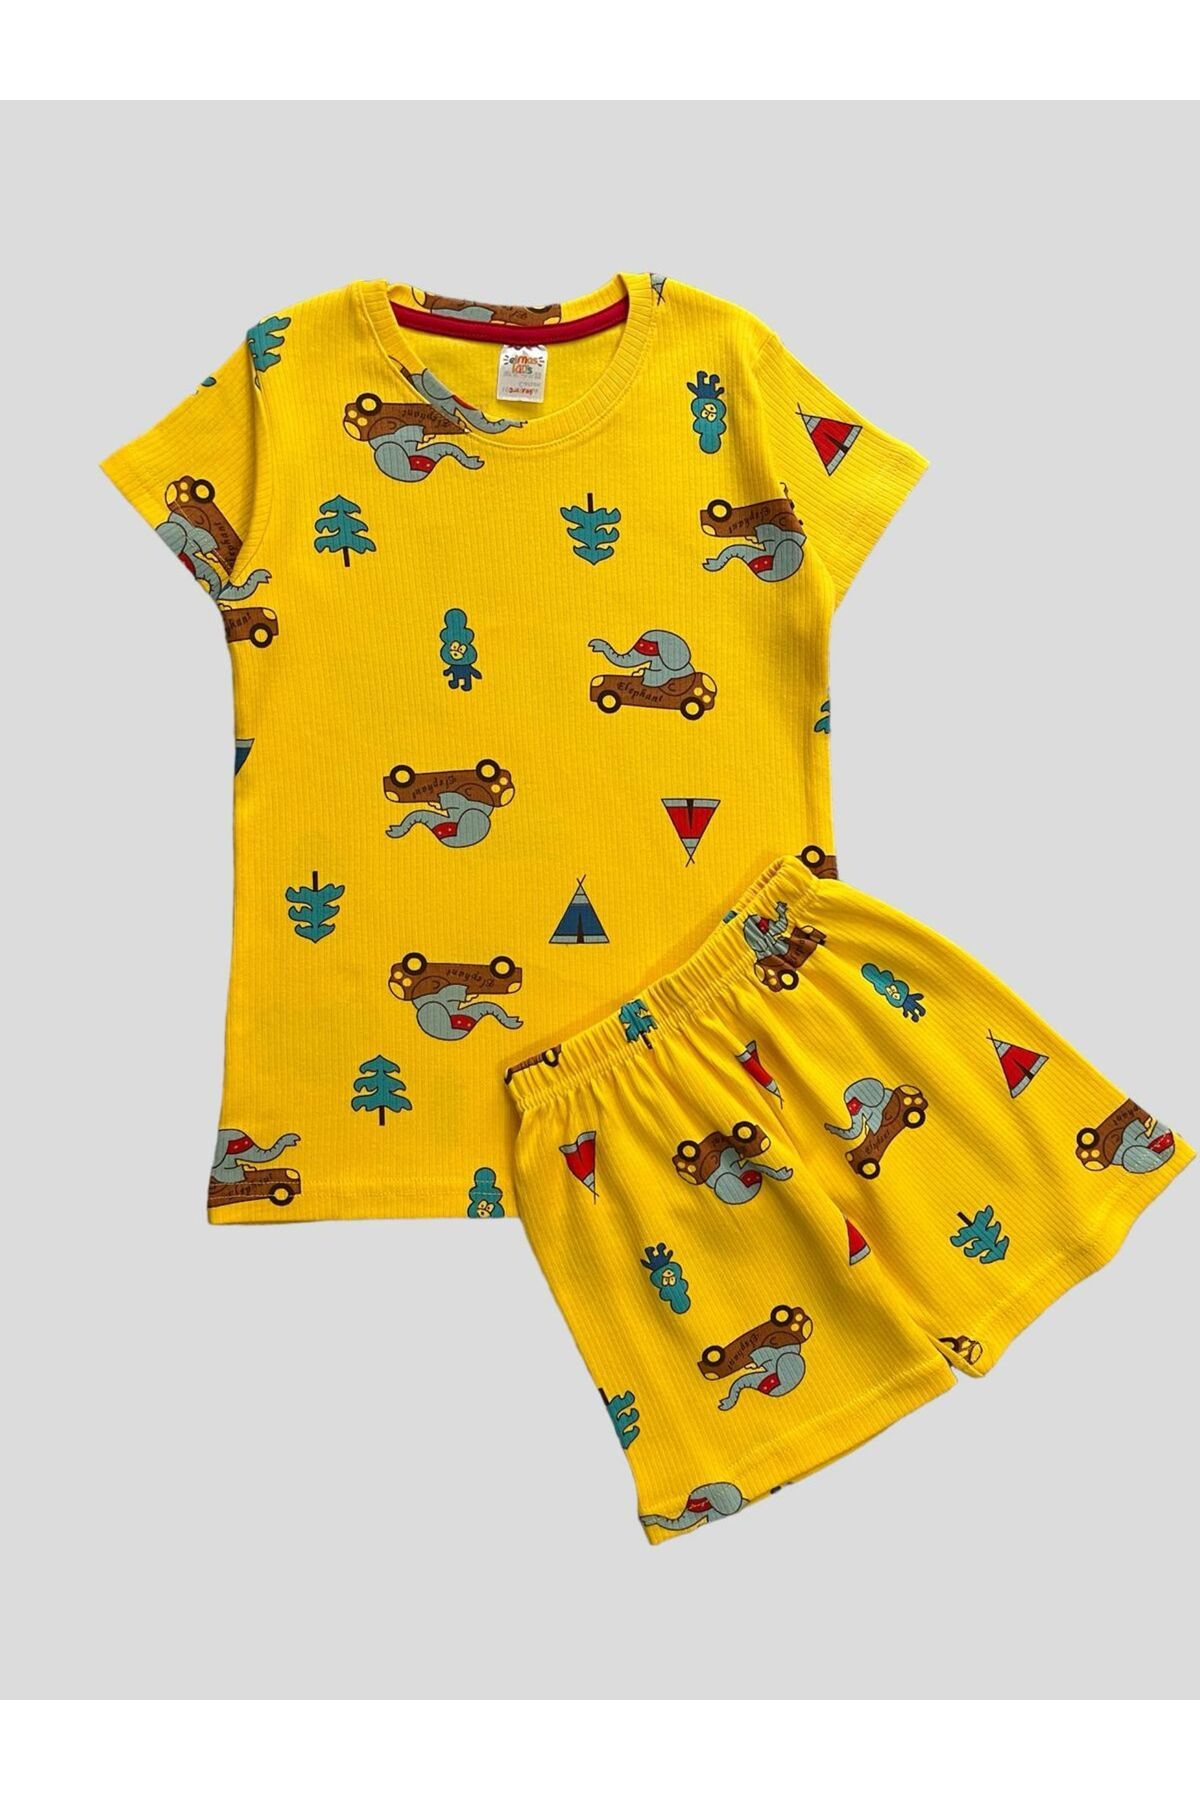 elmas kids Erkek Çocuk Pamuklu Araba Fil Ağaç Desenli Fitilli Kumaş Sarı Kısa Kollu Şortlu Pijama Takımı